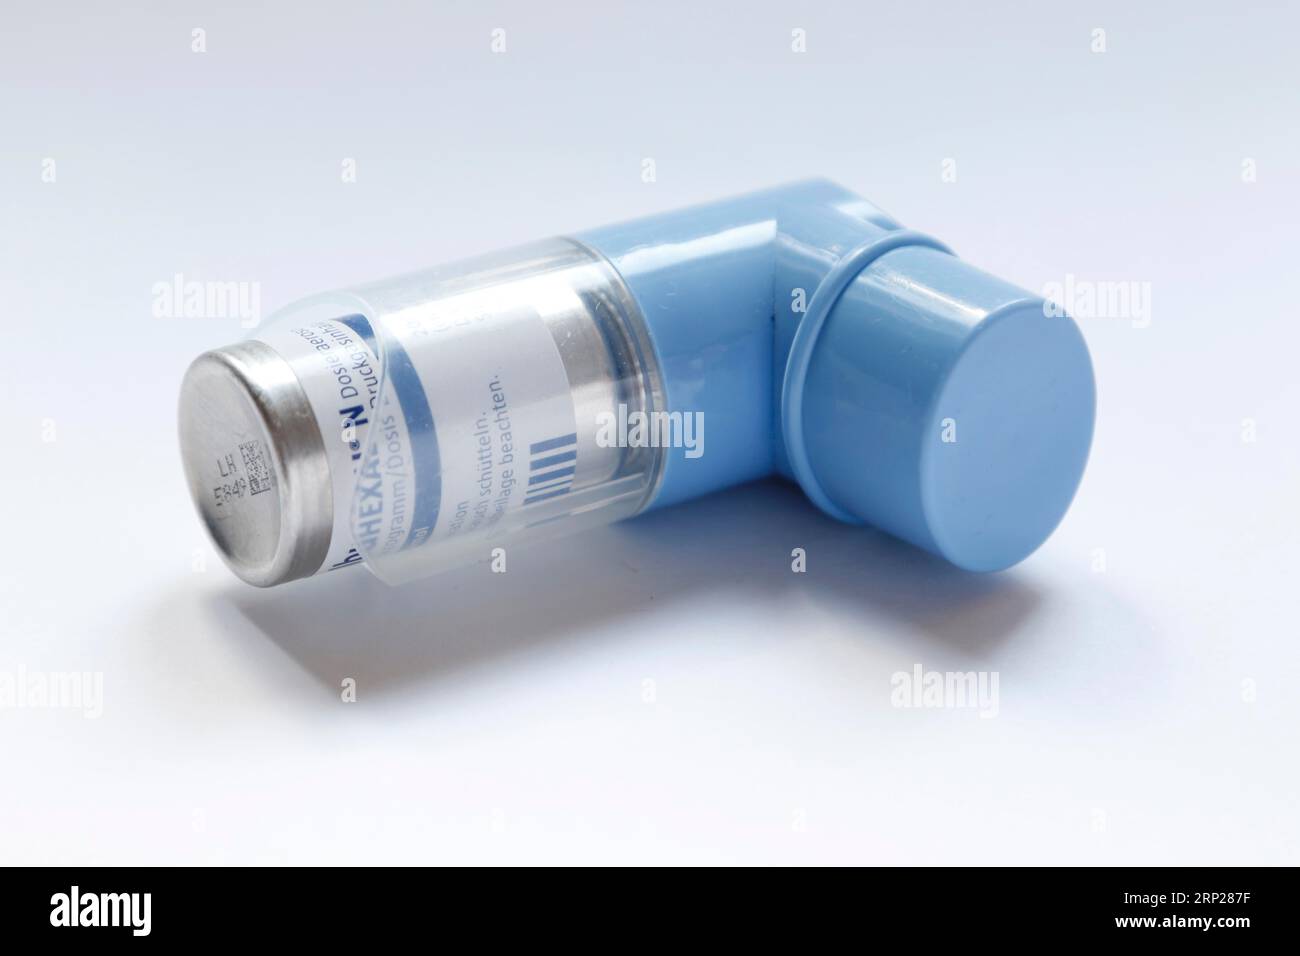 Image symbolique, spray pour asthme, inhalateur avec le médicament  Salbuhexal N sur fond blanc, Allemagne Photo Stock - Alamy